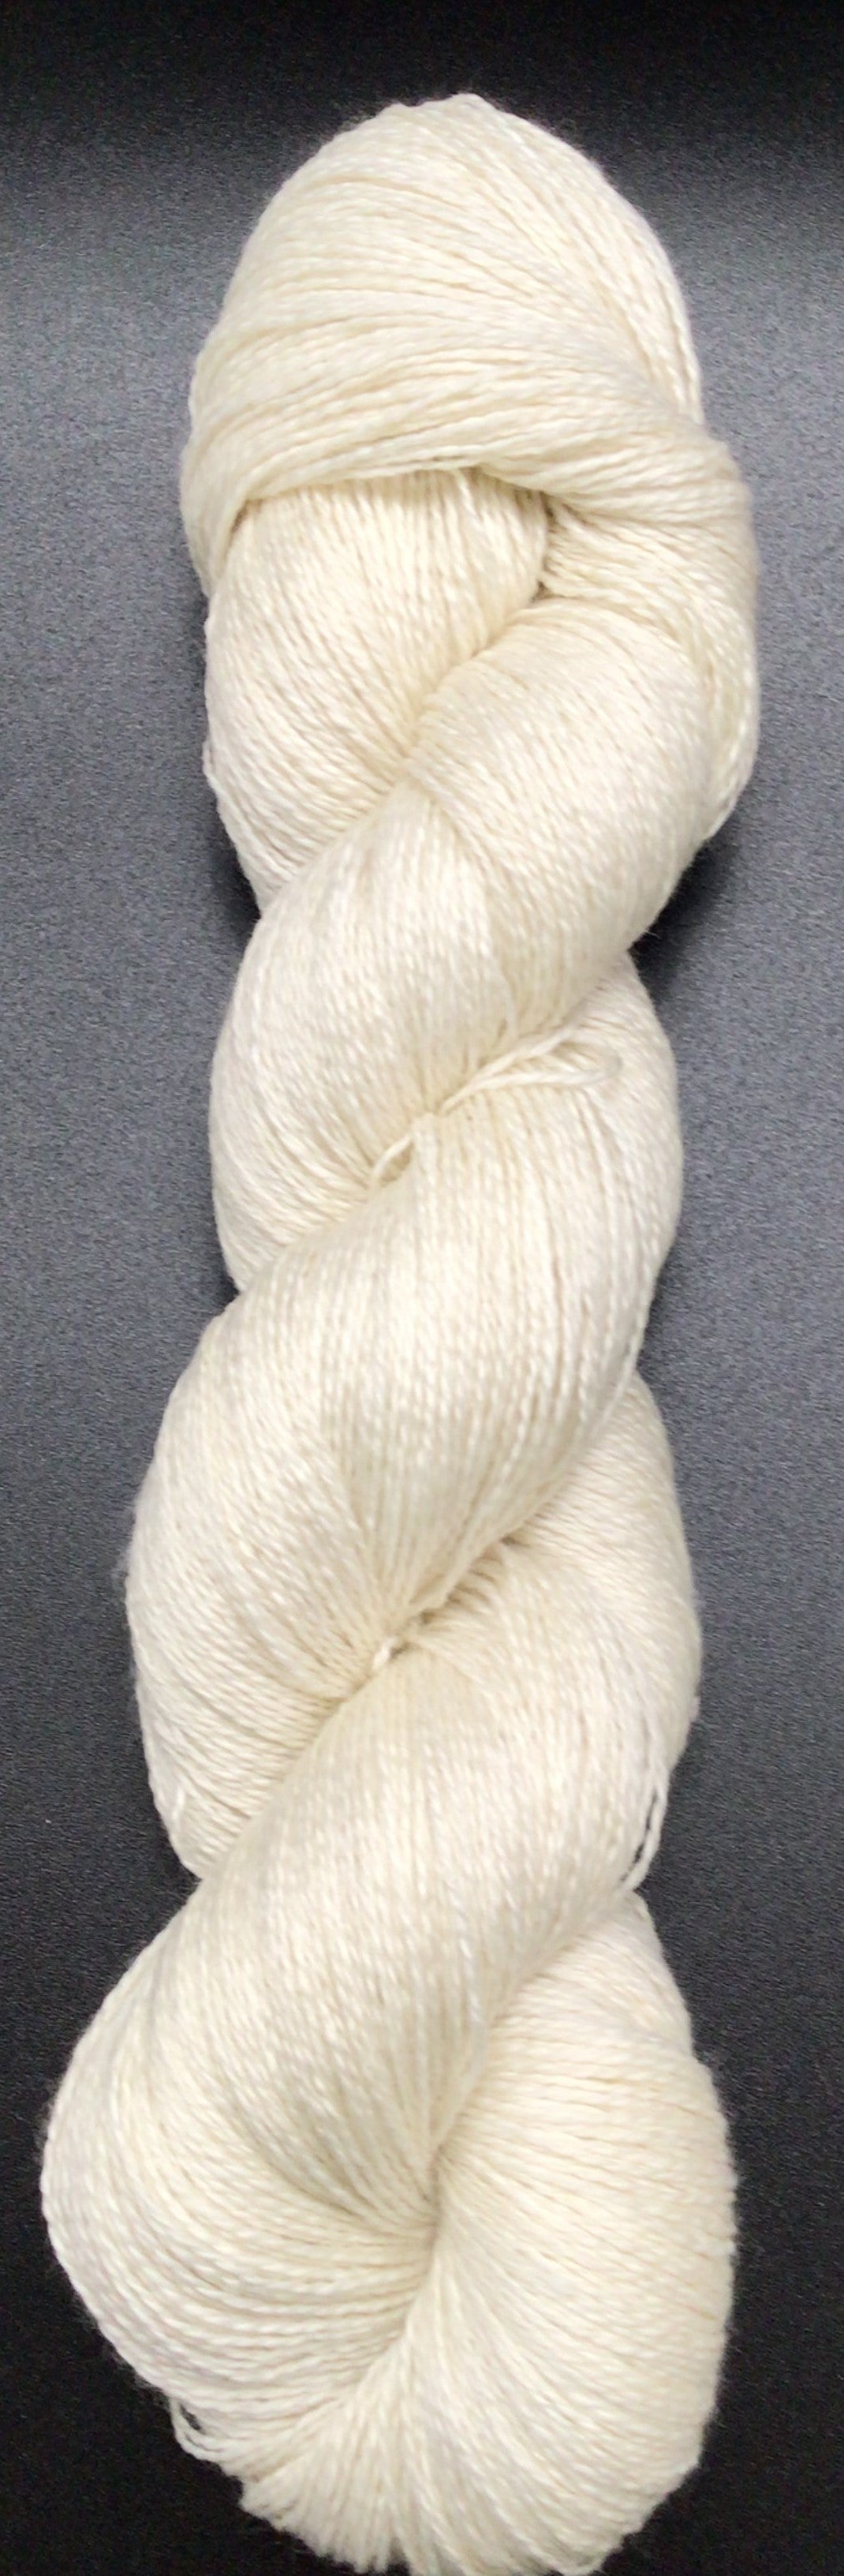 80% Merino Wool Superwash/ 10% Cashmere / 10% Nylon.